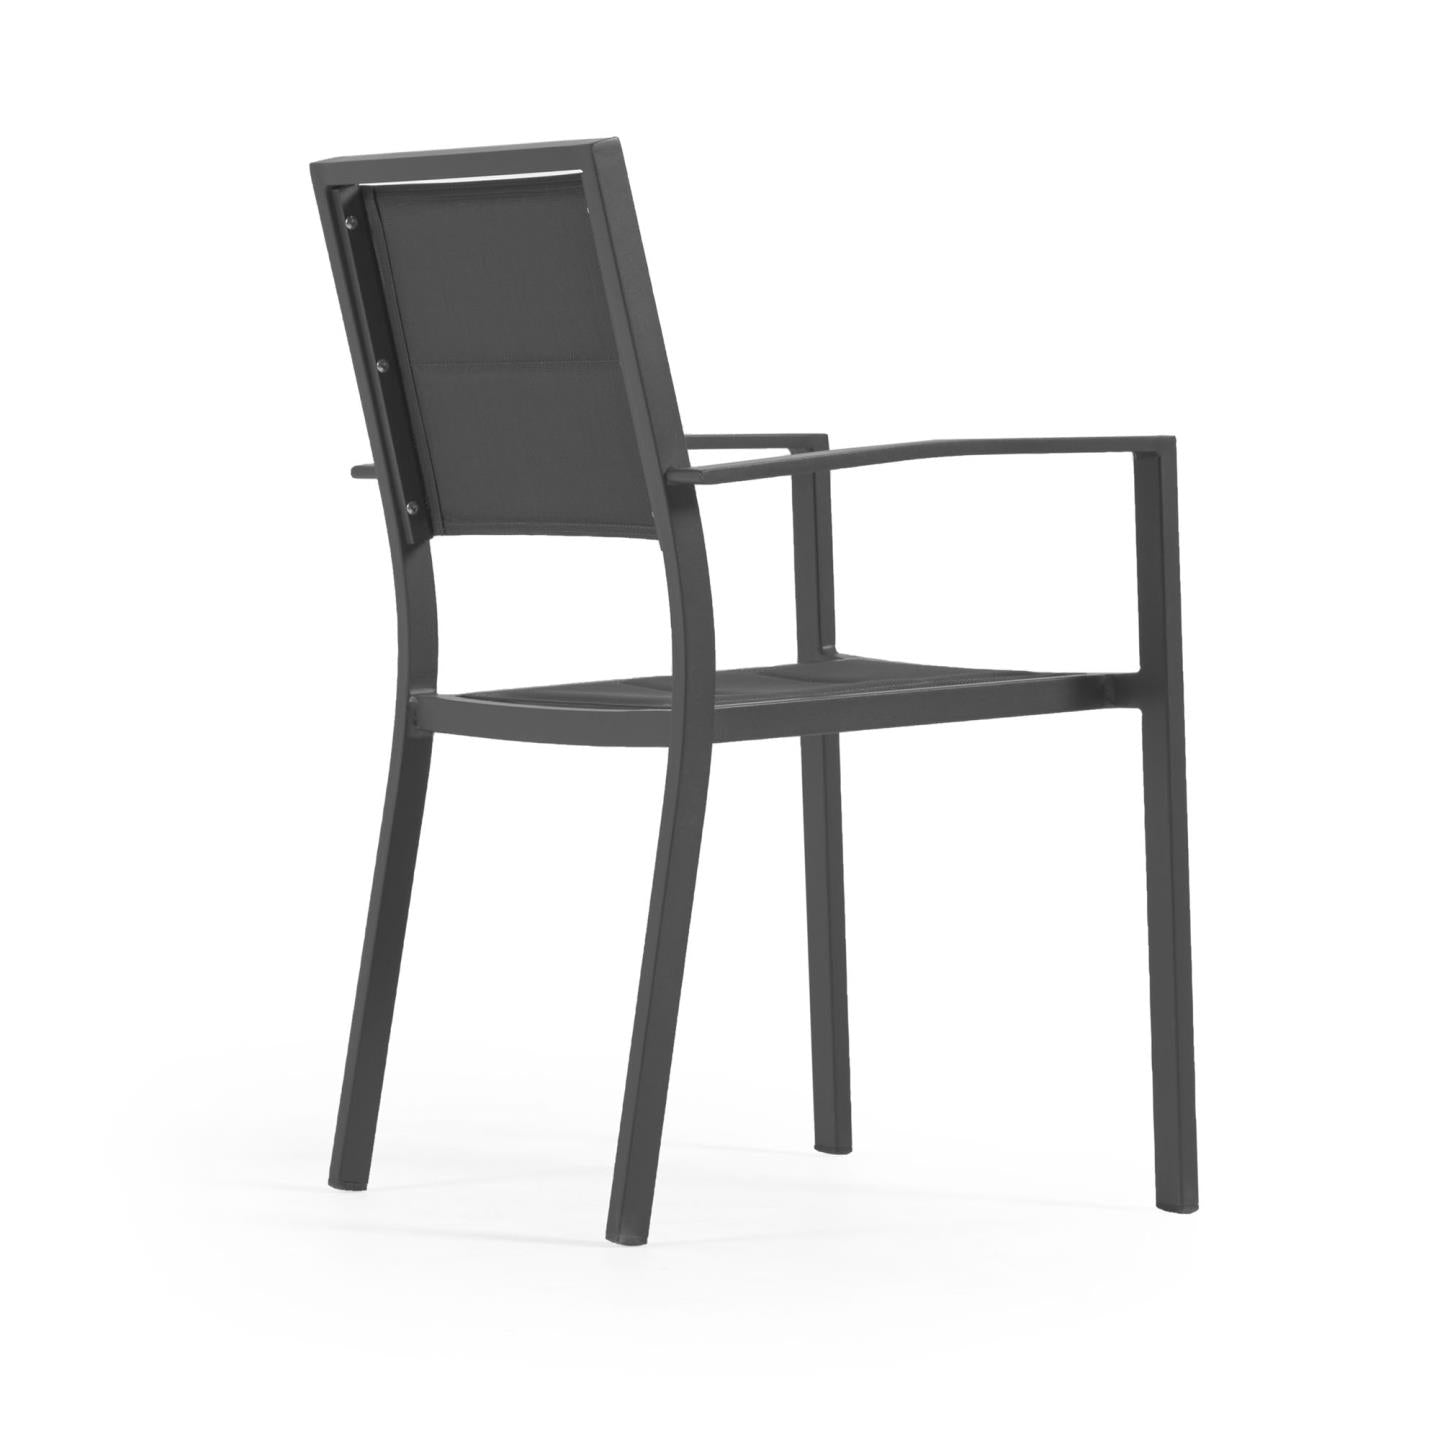 Sirley egymásba rakható kültéri szék fekete alumíniumból és textilénből